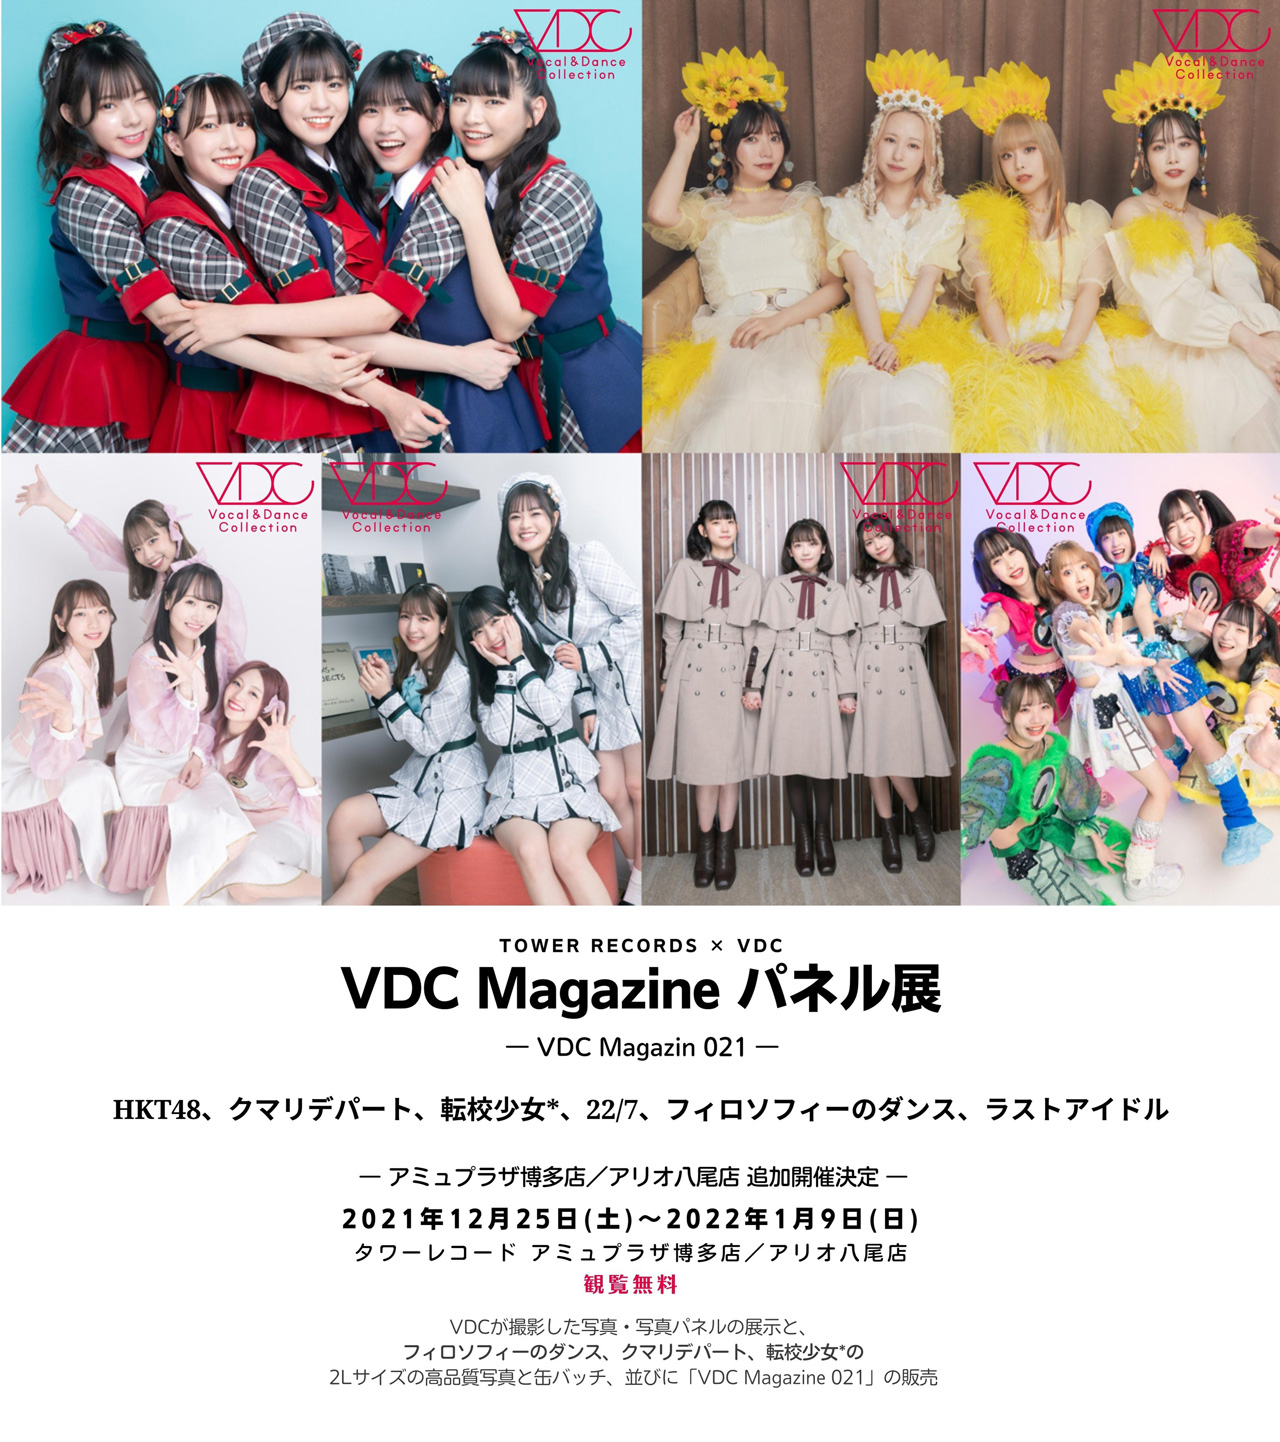 VDC Magazine 021 Photo Exhibition